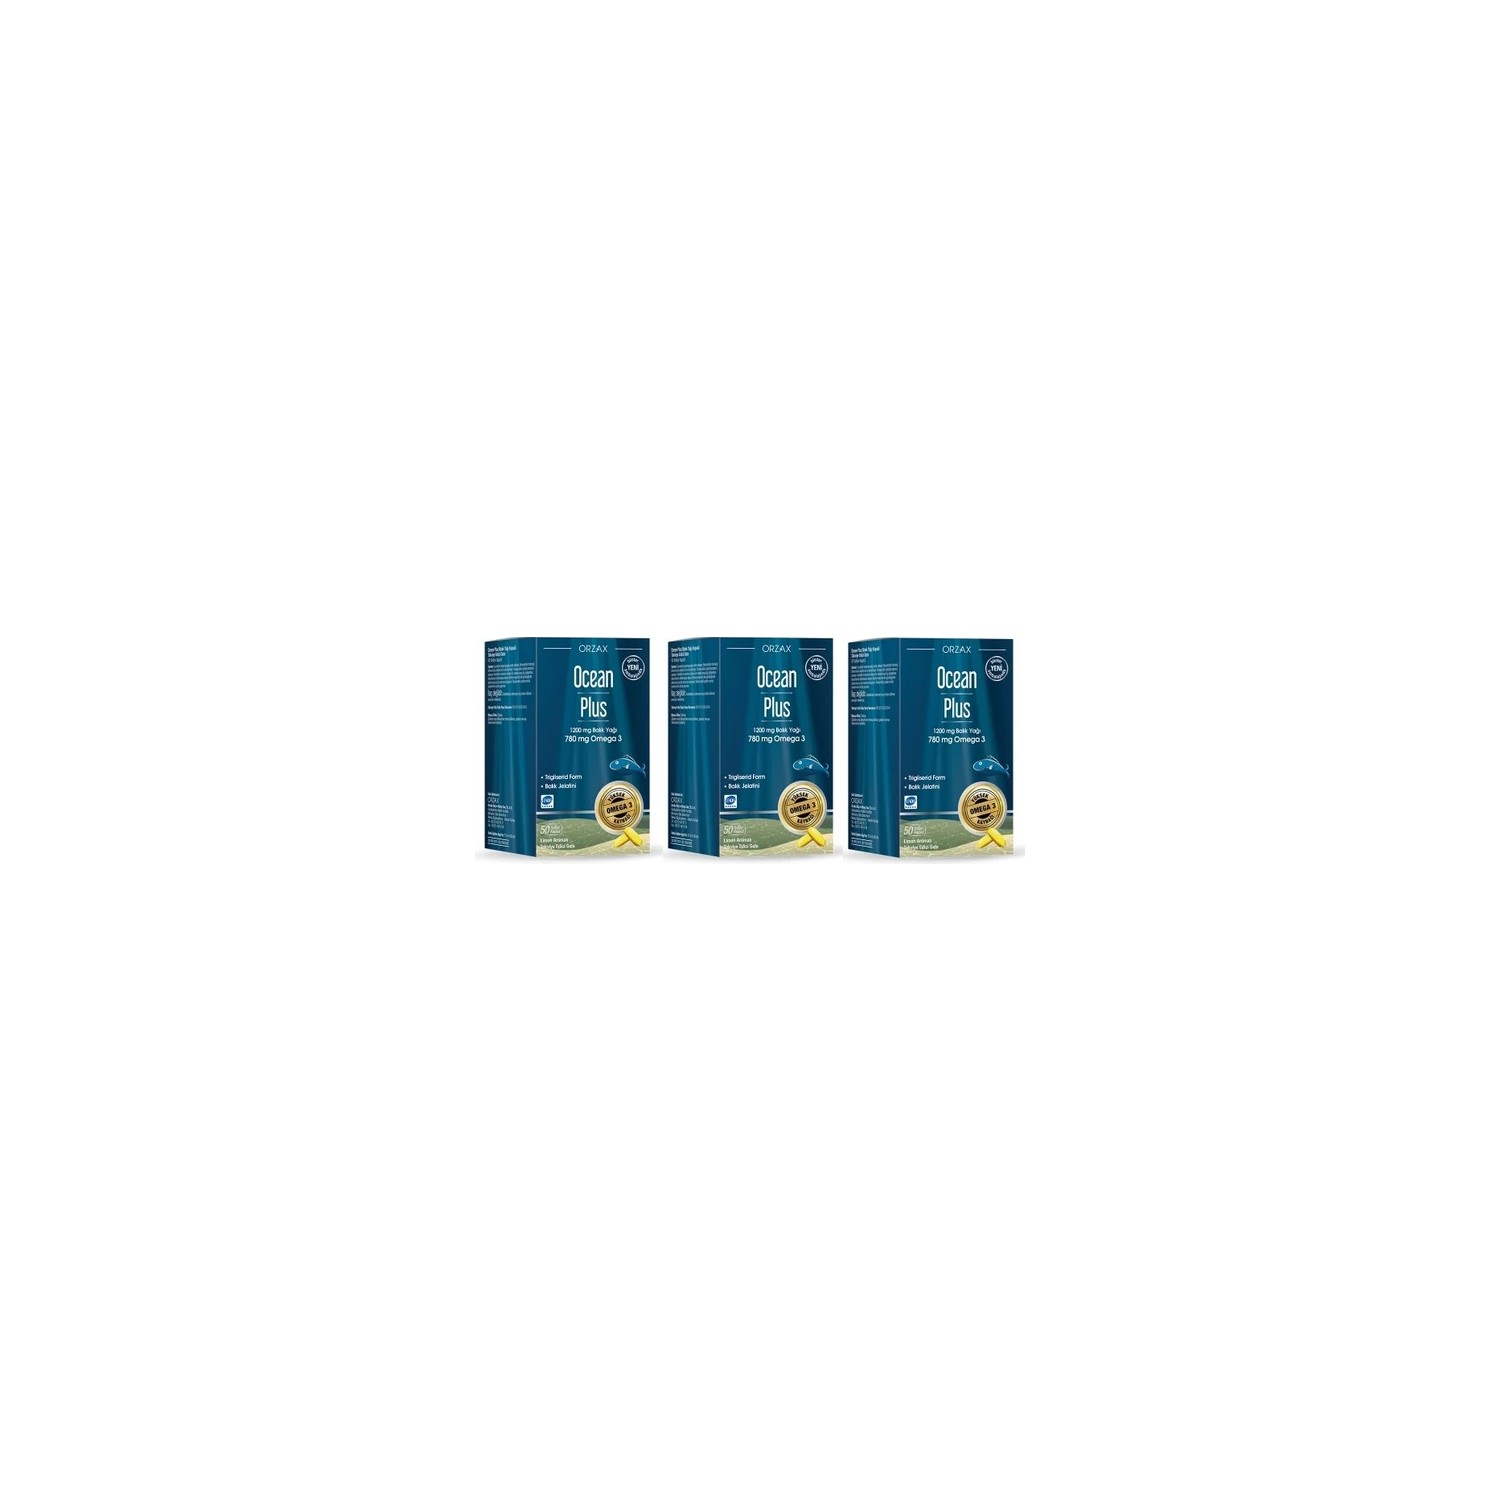 Омега-3 Plus Orzax Ocean 1200 мг, 3 упаковки по 50 мягких капсул омега 3 plus orzax 1200 мг 2 упаковки по 50 капсул